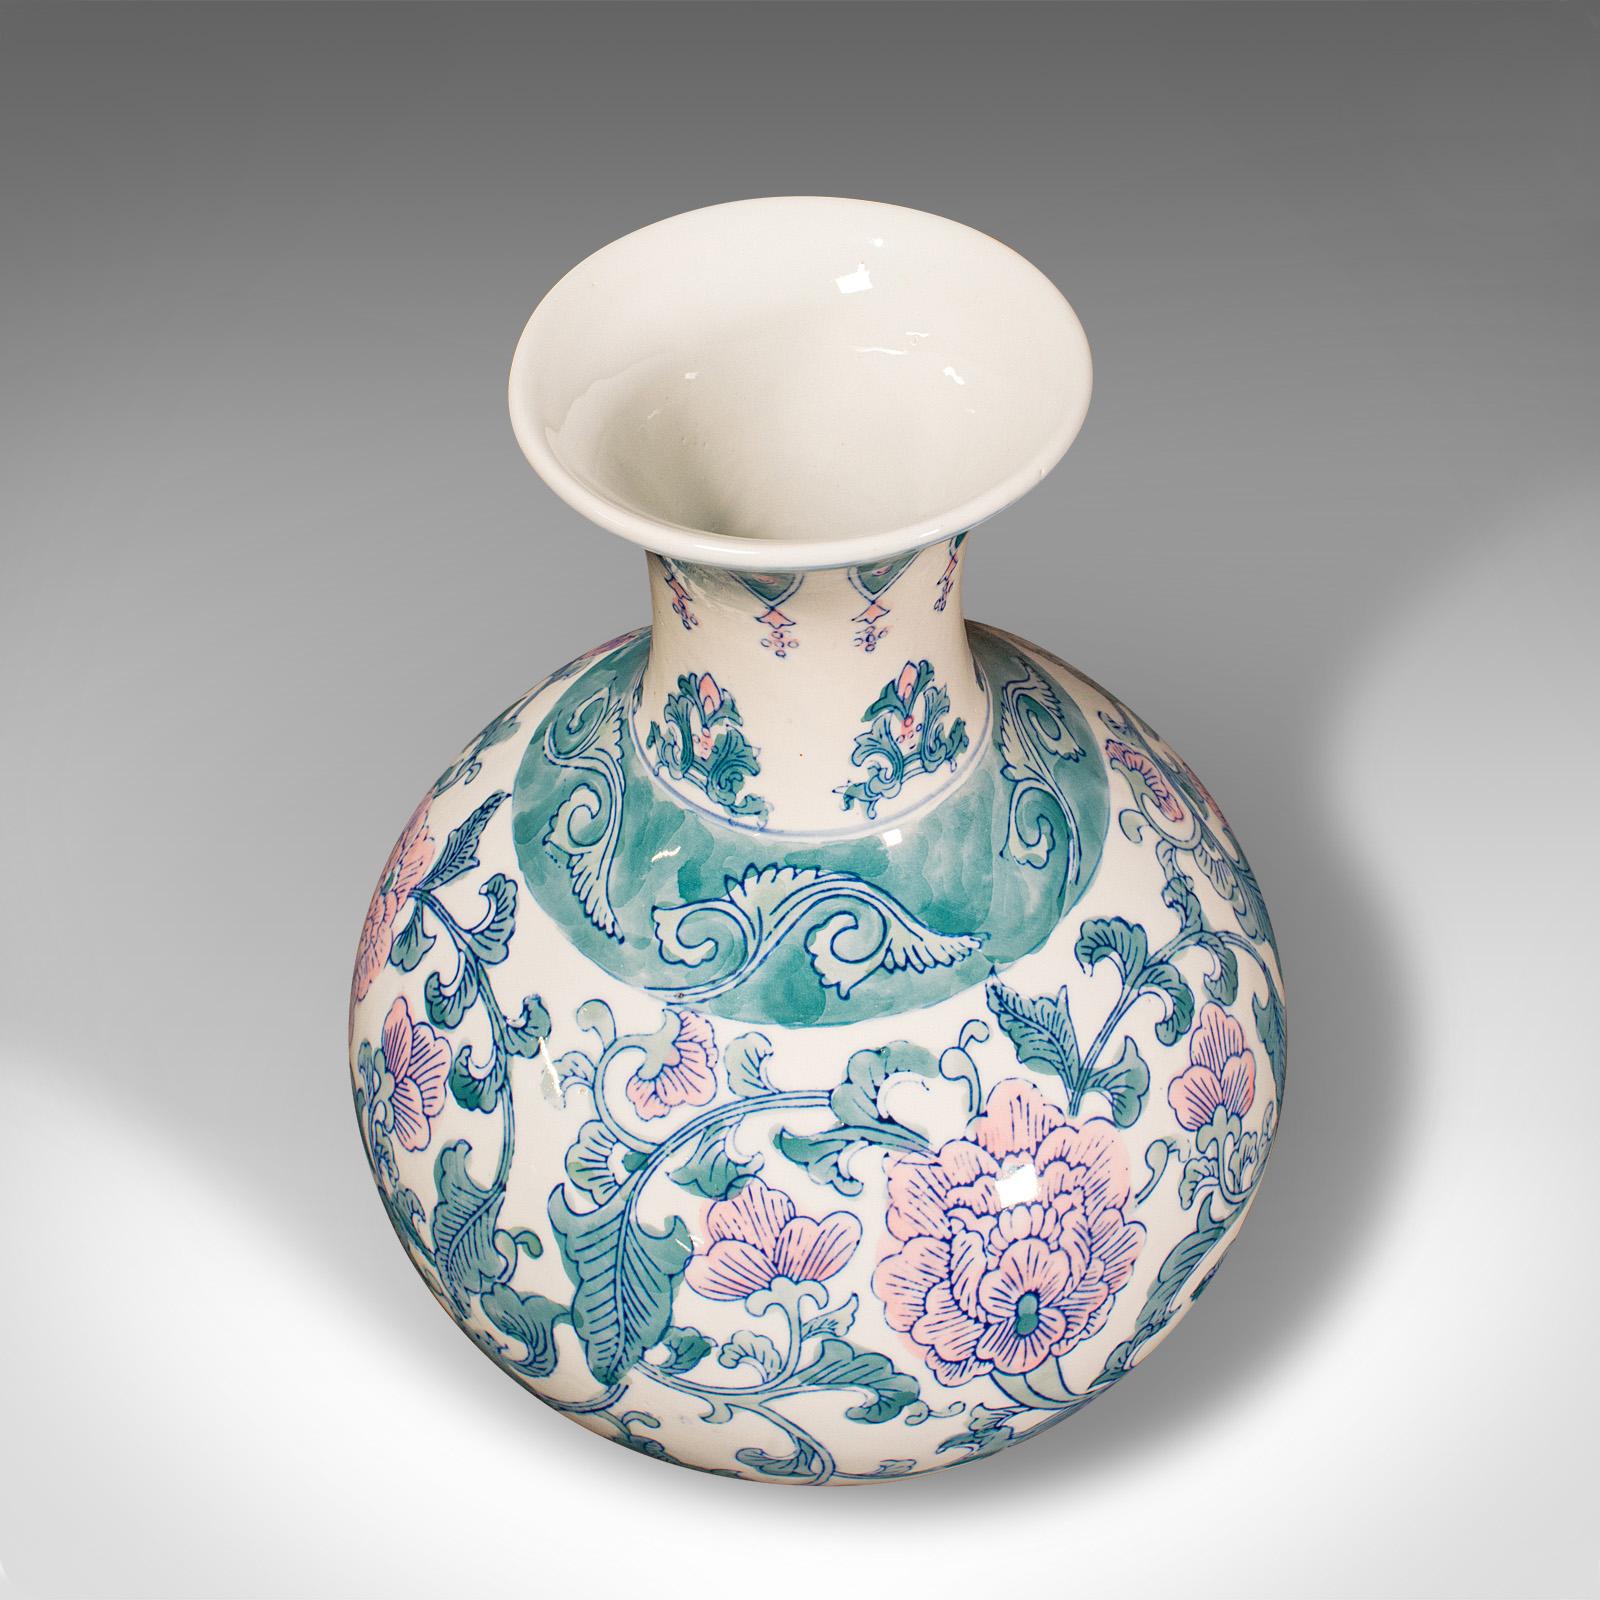 Large Vintage Baluster Vase, Chinese, Ceramic Flower Pot, Art Deco Revival, 1970 For Sale 2